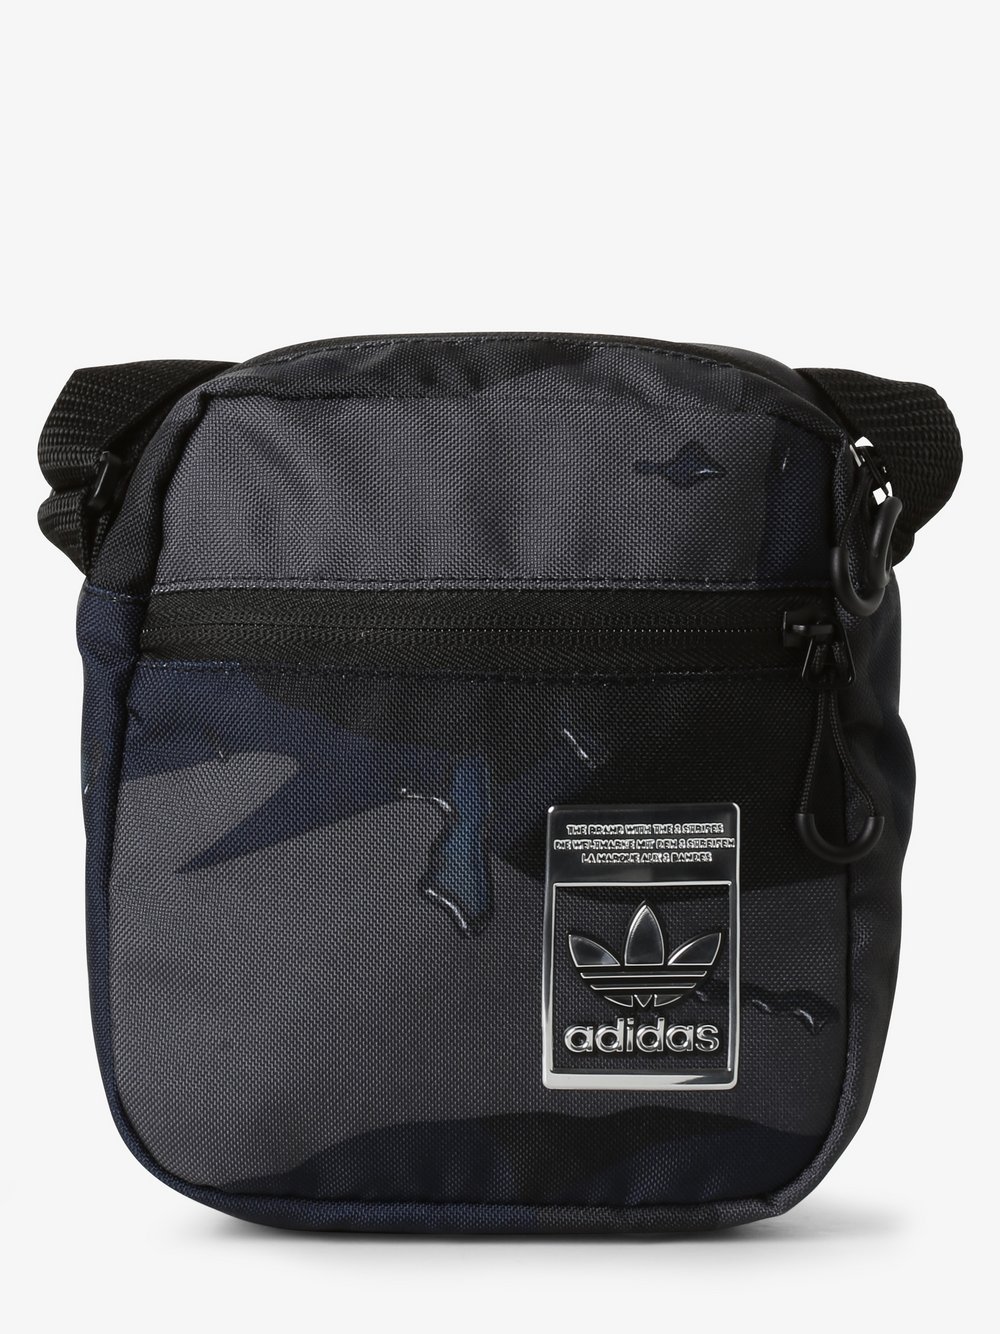 Adidas Originals - Męska torebka na ramię, czarny